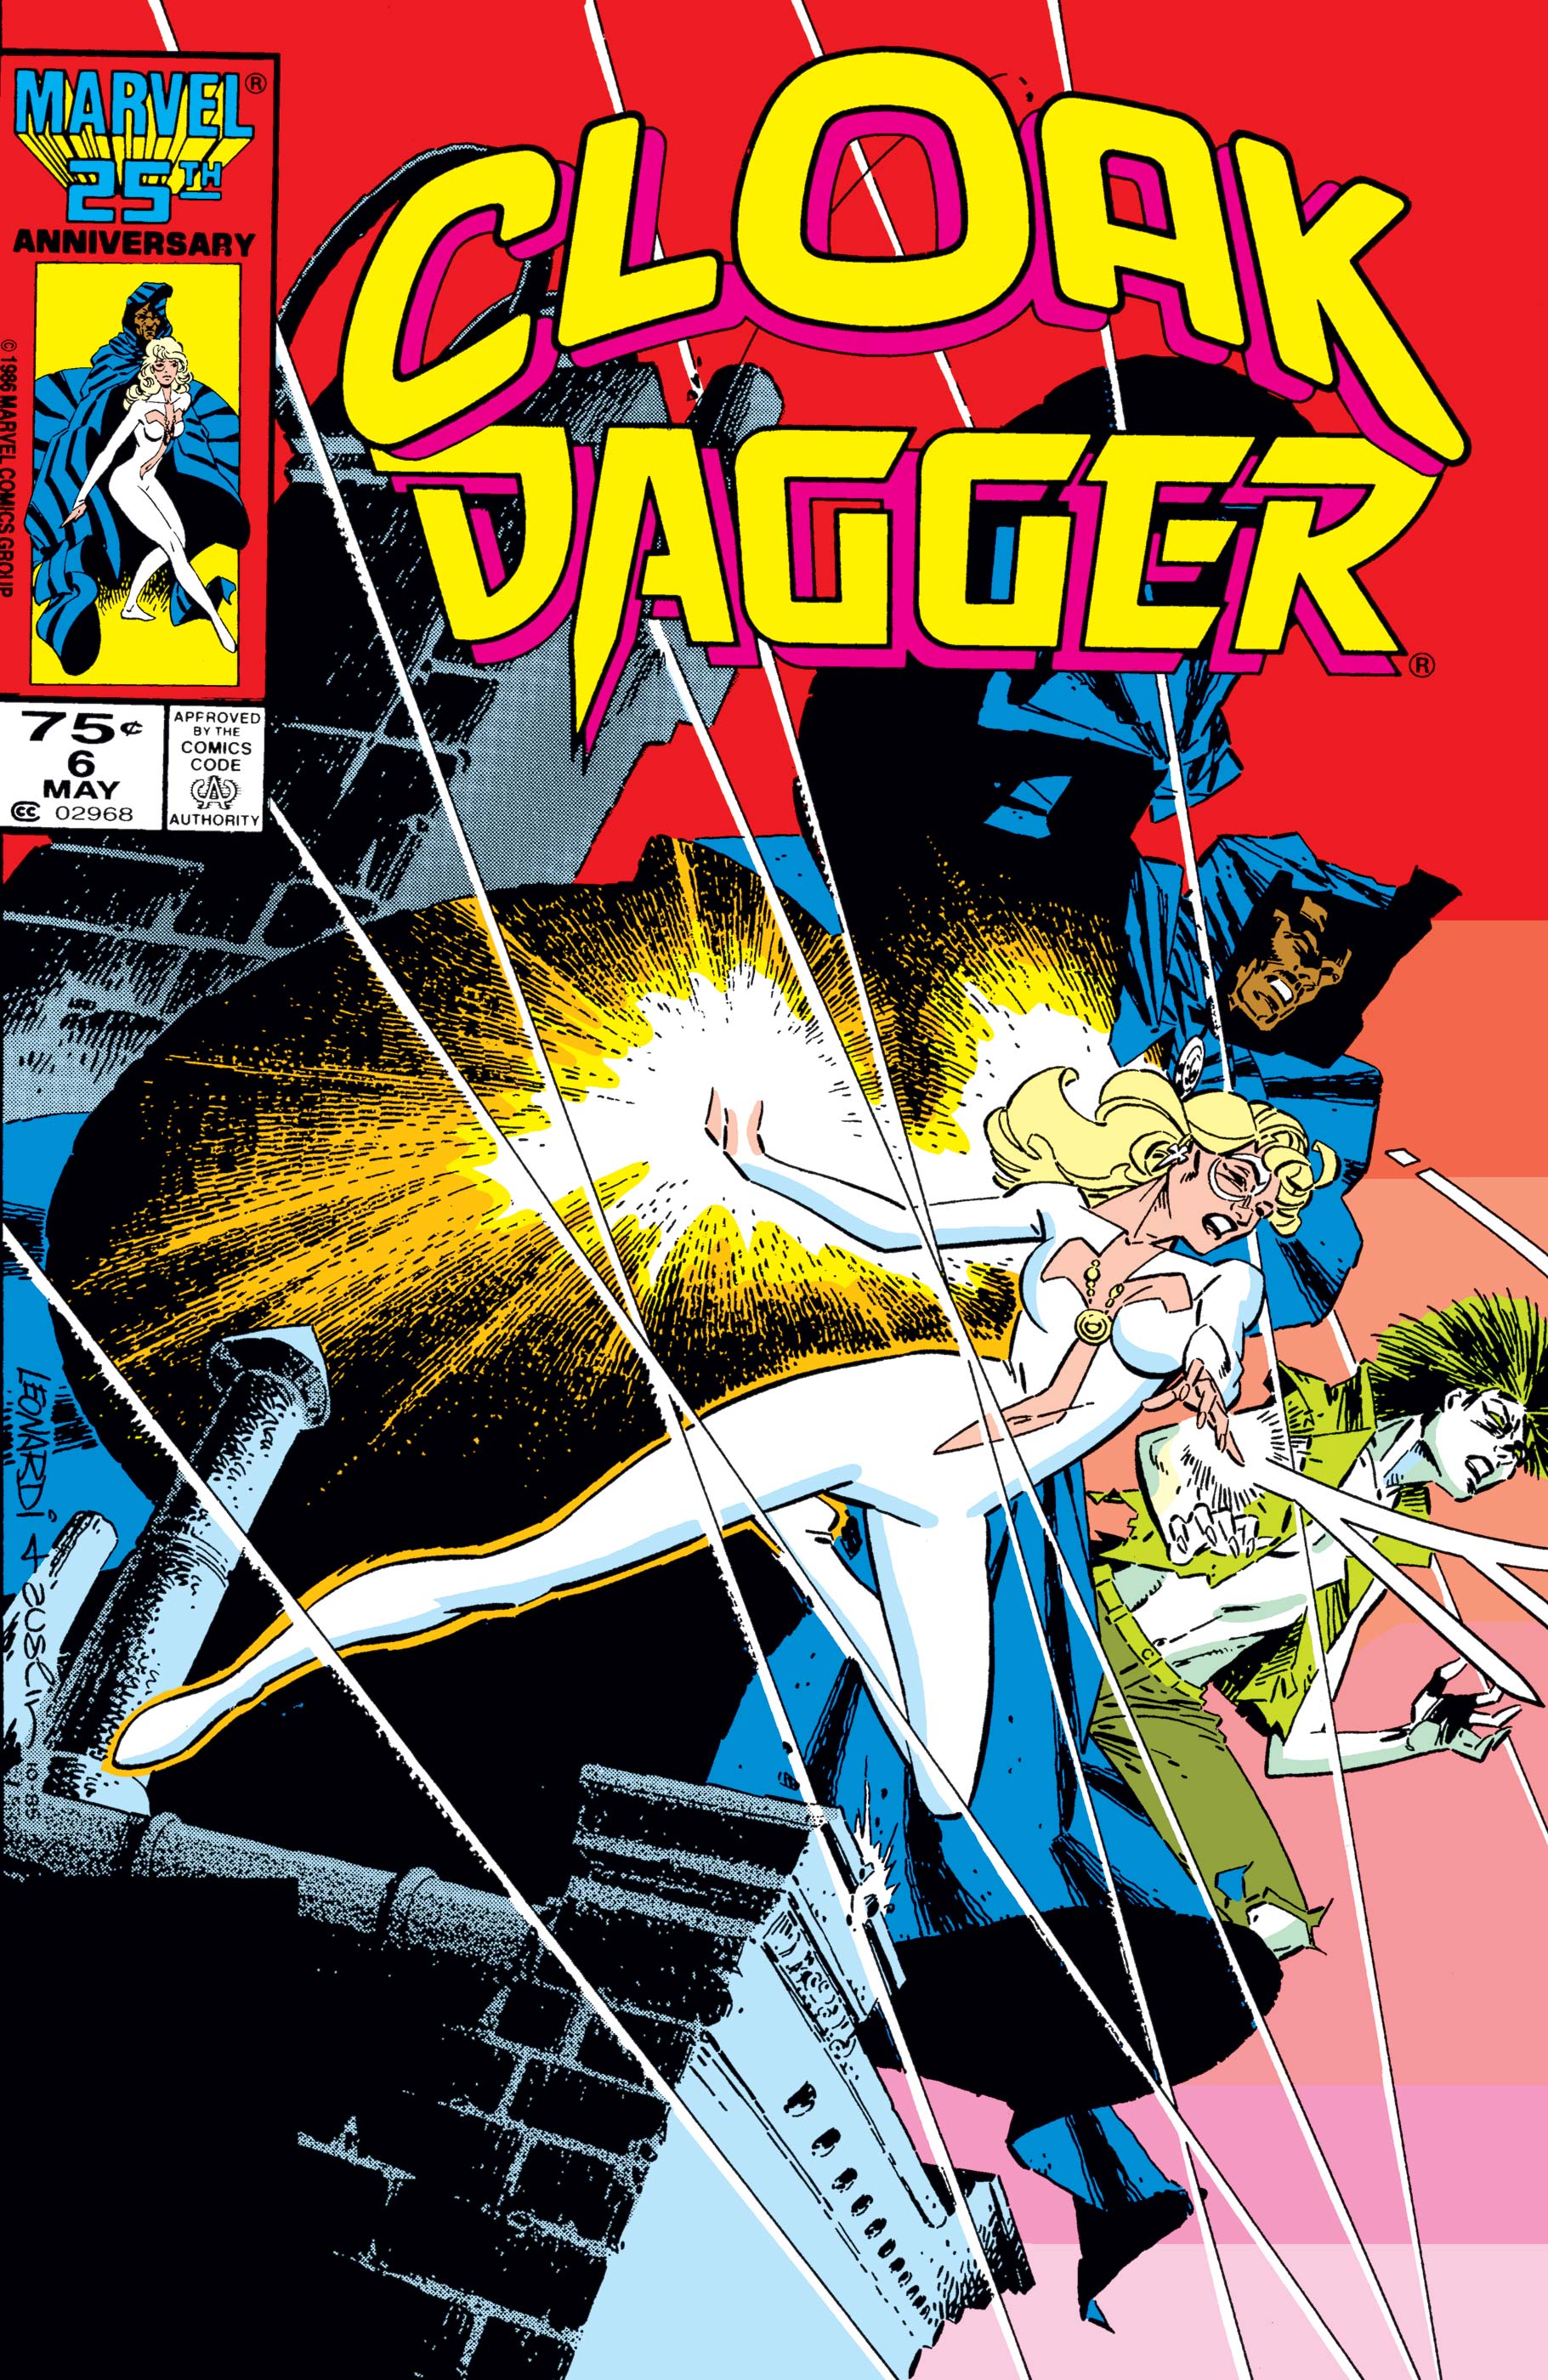 Cloak and Dagger (1985) #6